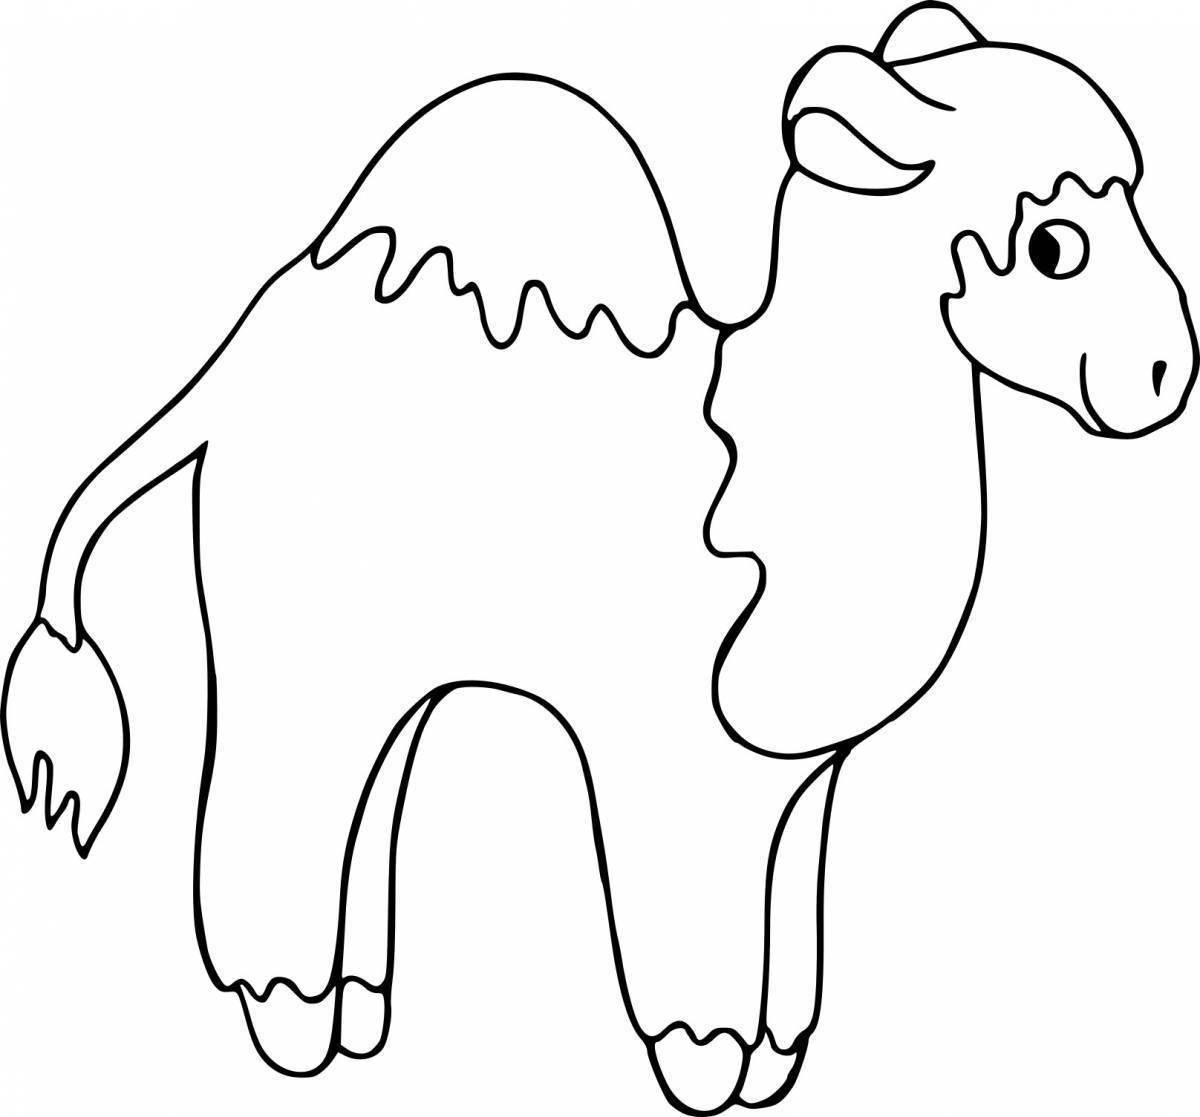 Увлекательная раскраска верблюда для детей